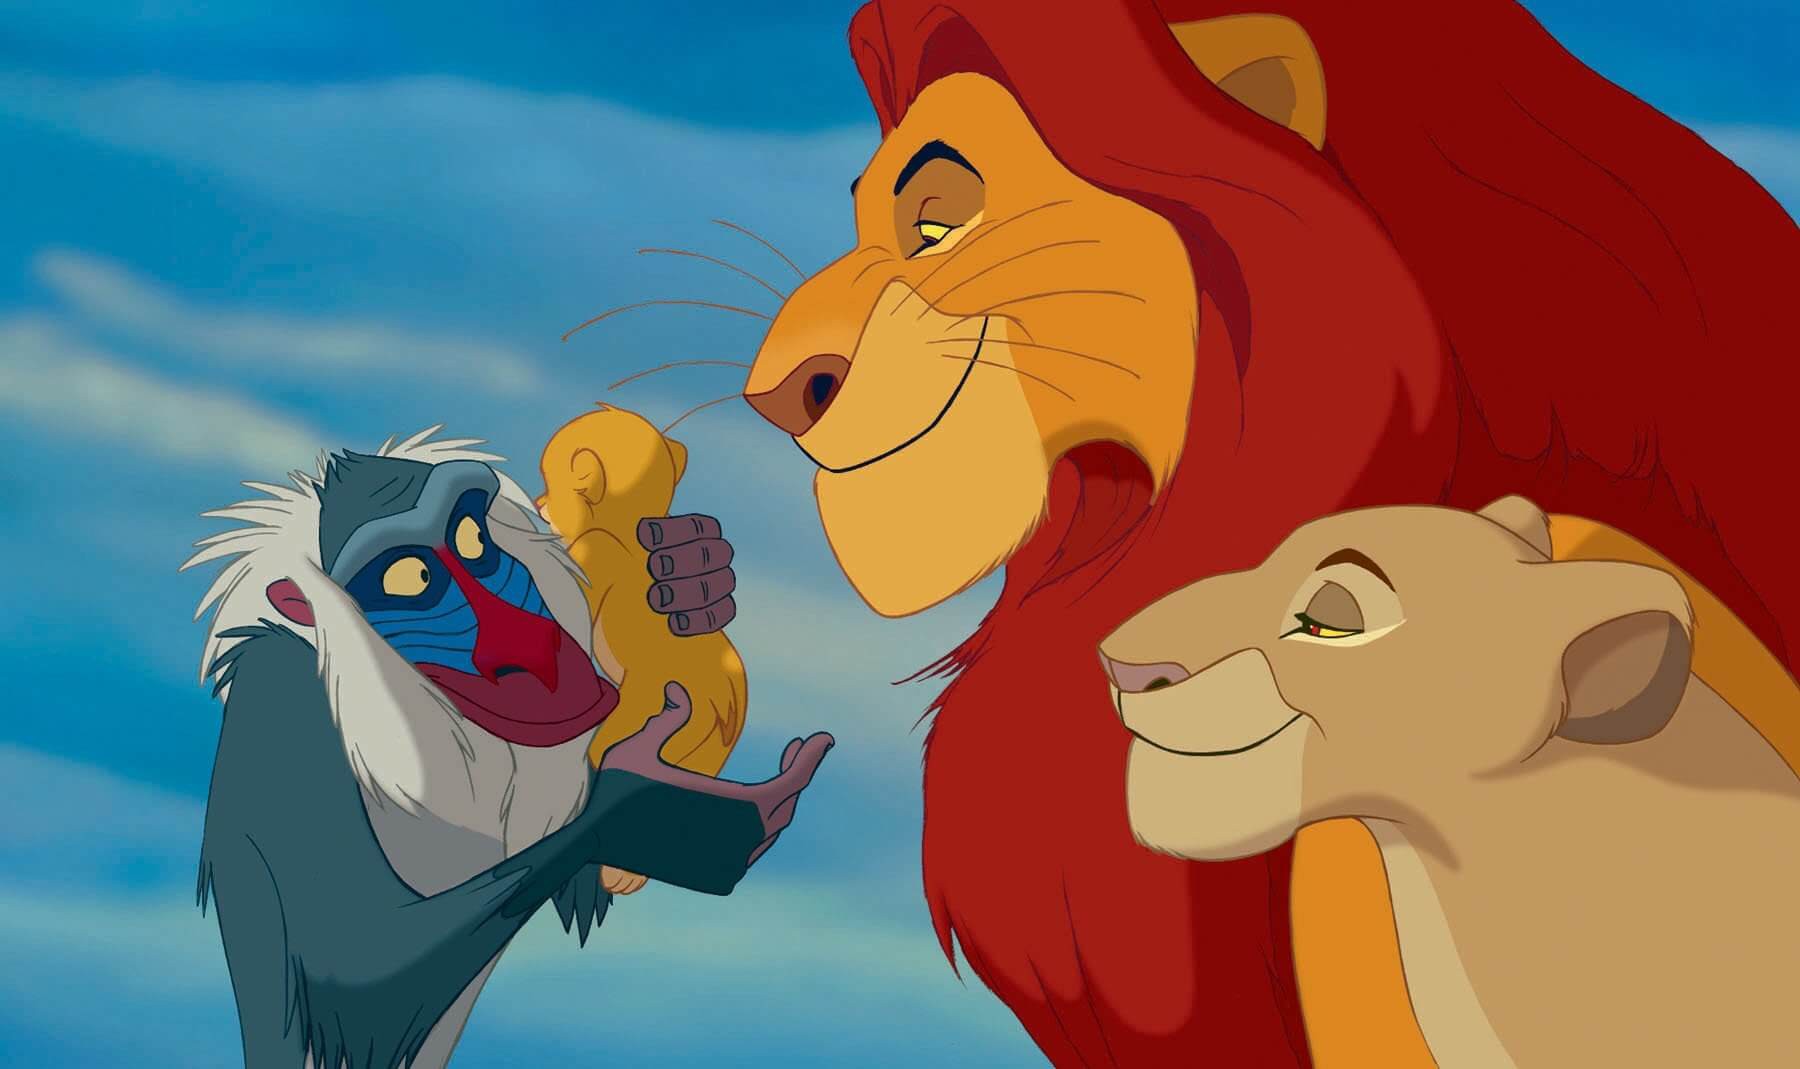 Le roi lion S01 sur Disney + : résumé de l'épisode